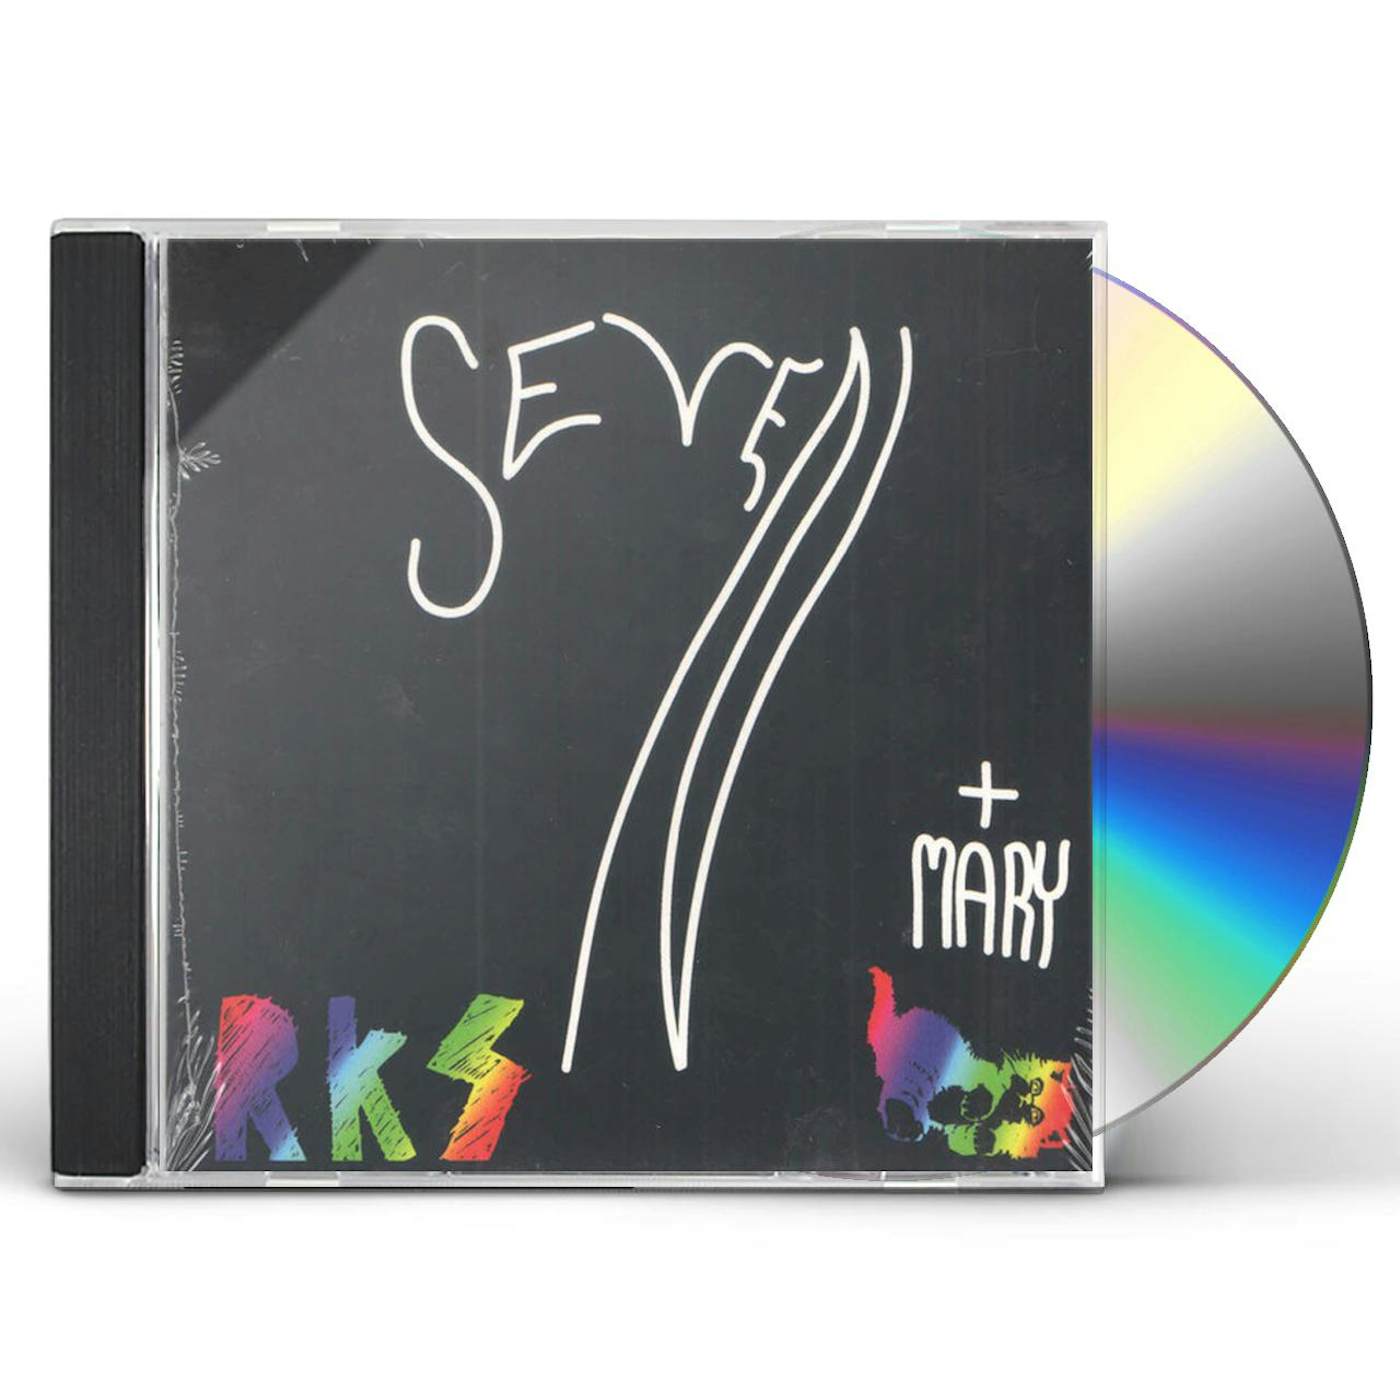 Rainbow Kitten Surprise SEVEN + MARY CD